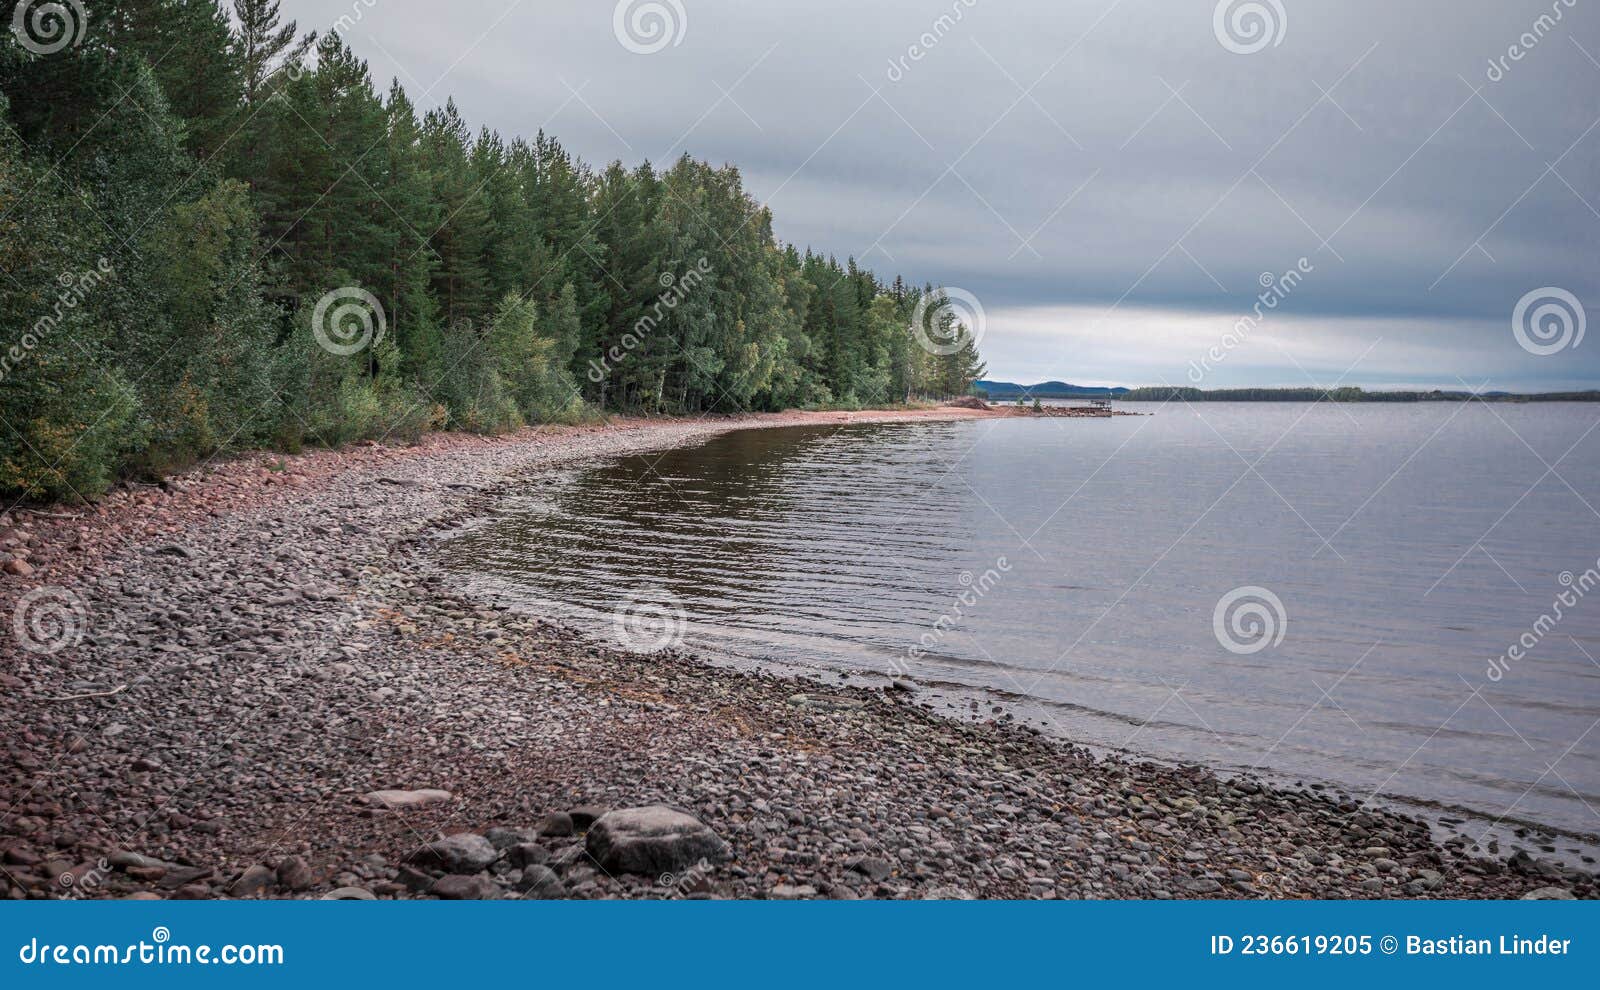 beach and lakeshore at lake siljan in dalarna, sweden